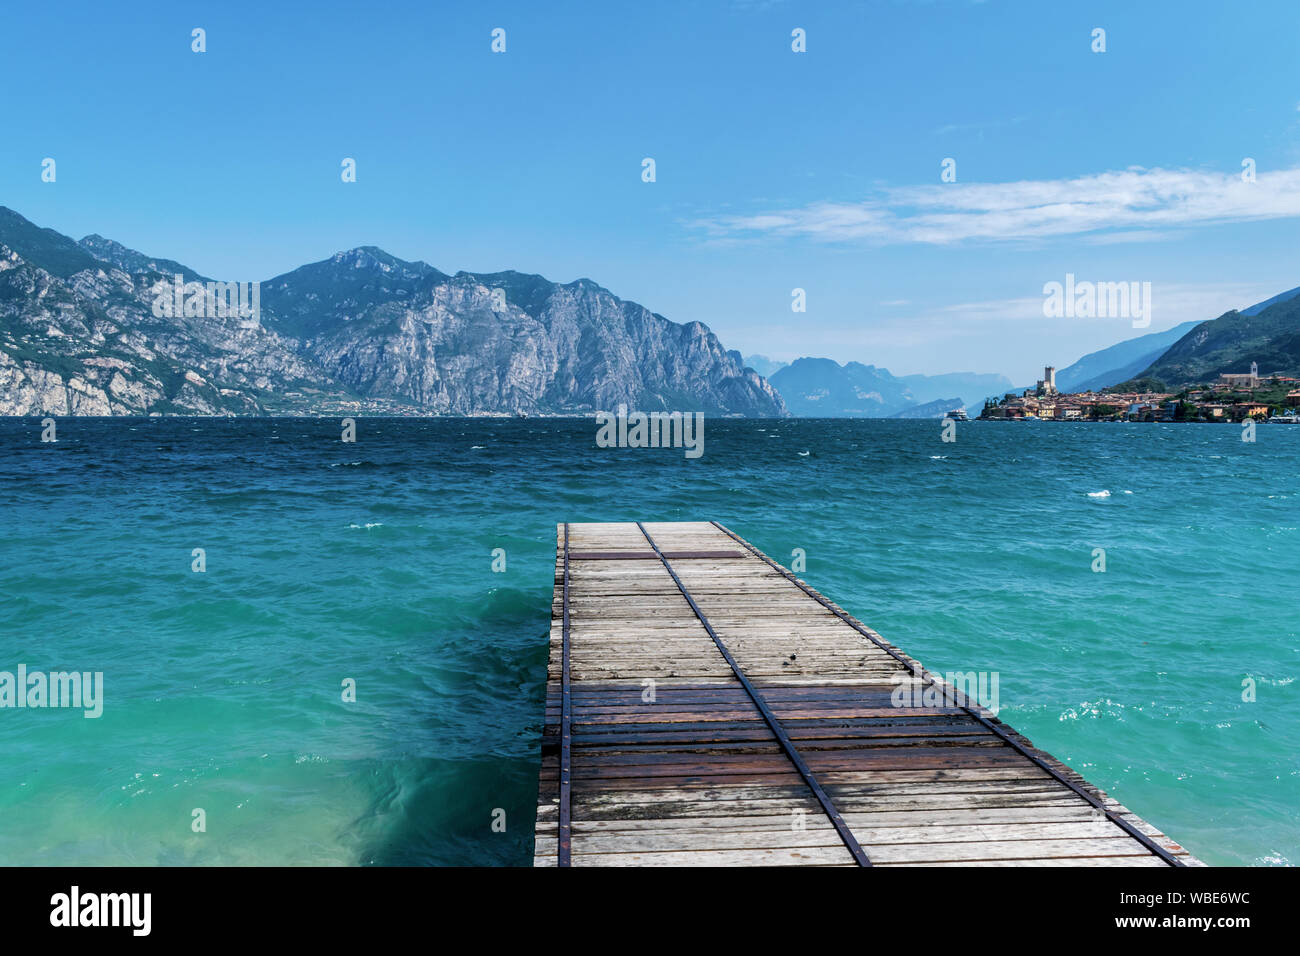 Dock in legno aggettante internamente al turquosie acqua del lago di Garda. il villaggio di Malcesine Foto Stock